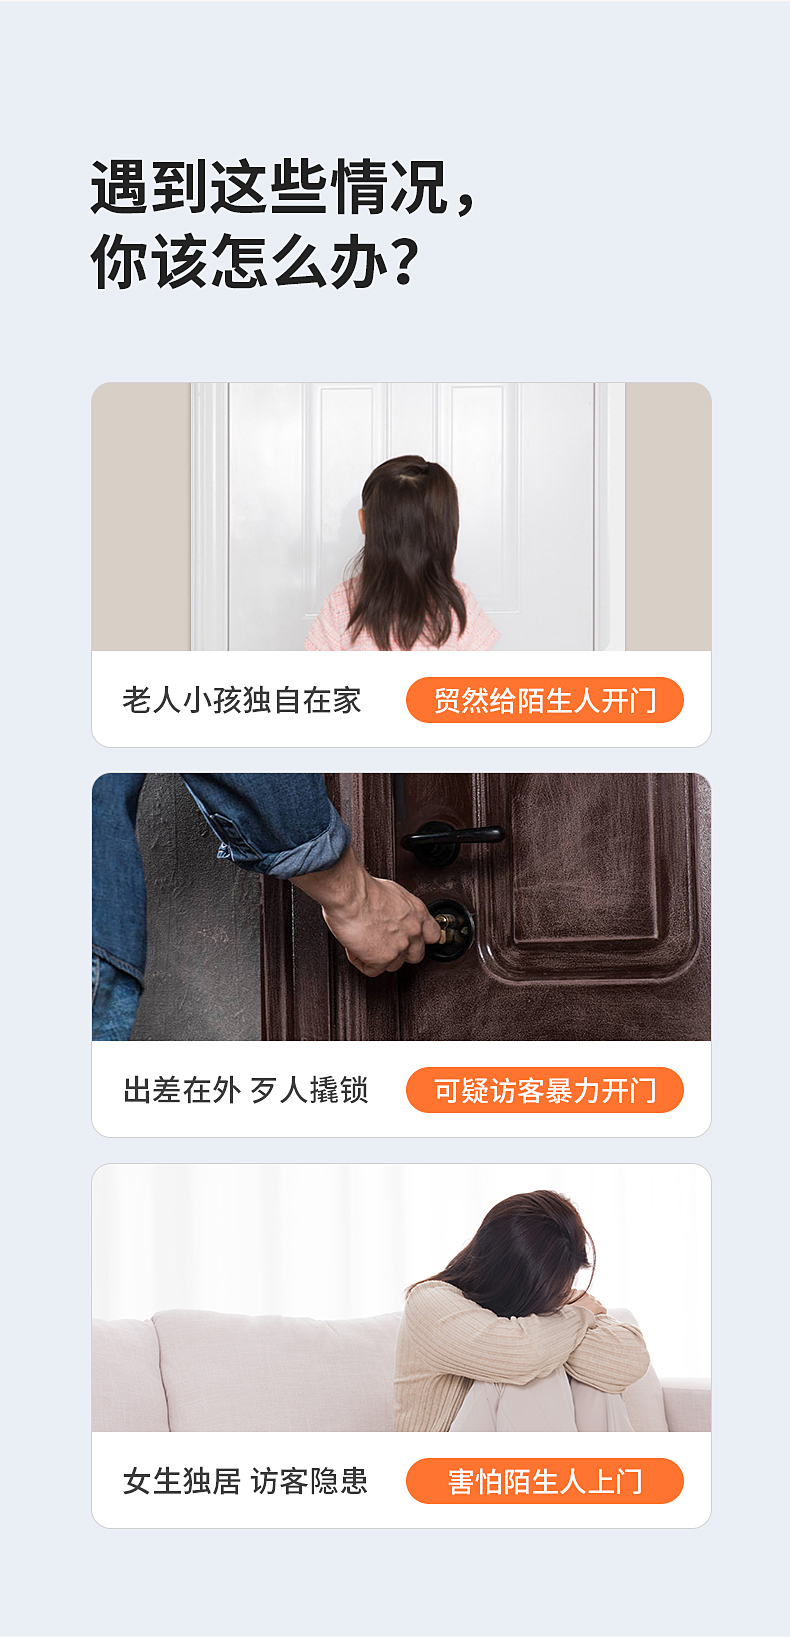 chuông cửa có màn hình Chuangmi Xiaobai chuông cửa video điện tử thông minh cửa mắt mèo giám sát không dây Xiaomi Iot truy cập vào Mijia chuông cửa có hình ete chuong cua man hinh khong day